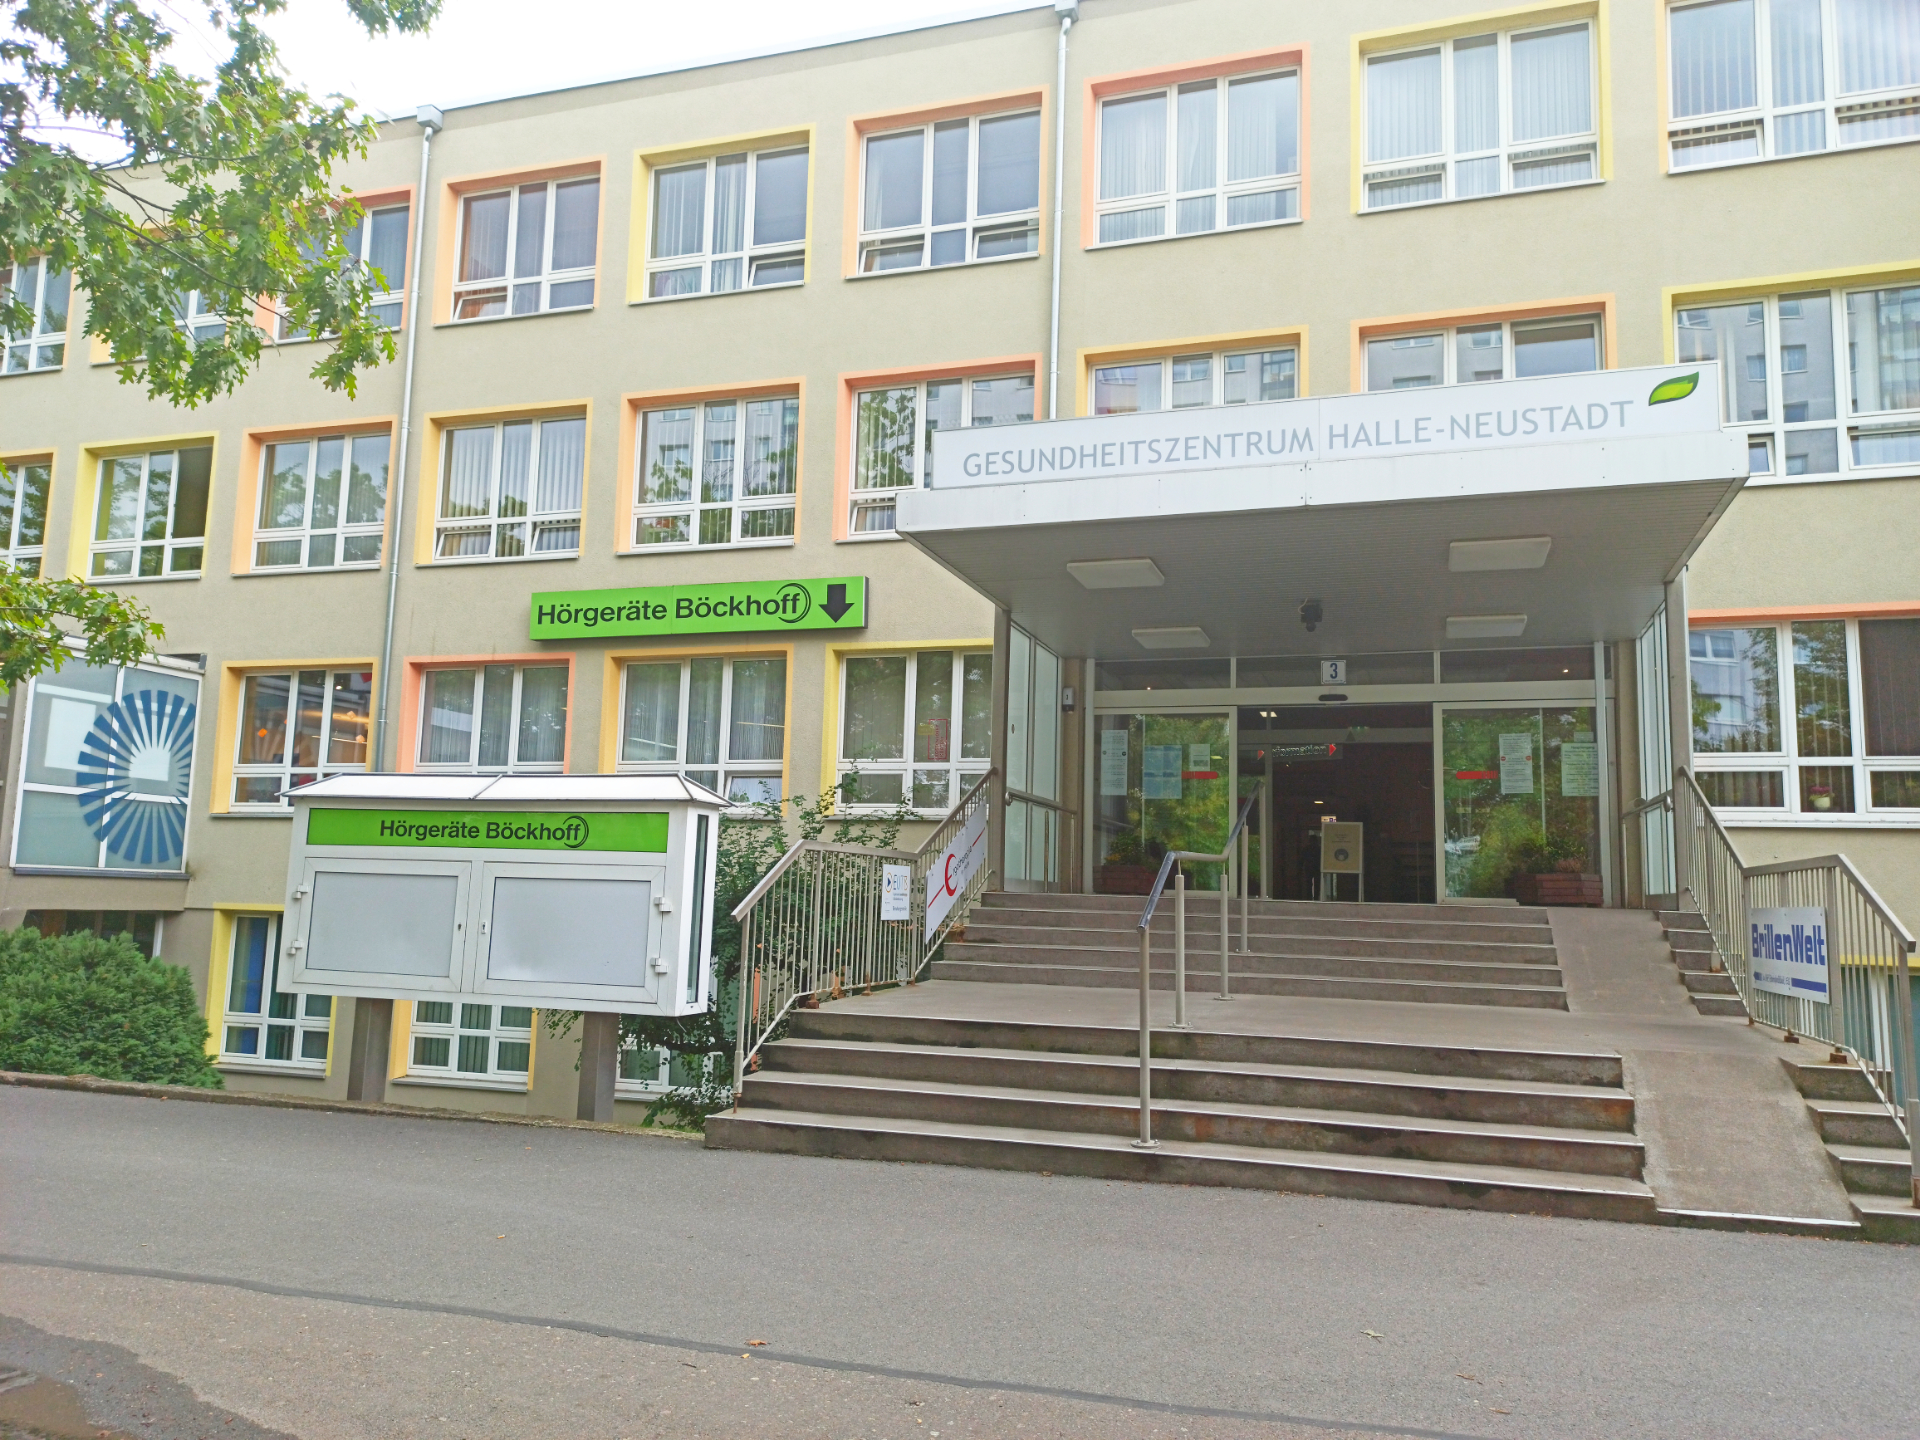 Außenansicht des Gesundheitszentrum in Halle-Neustadt